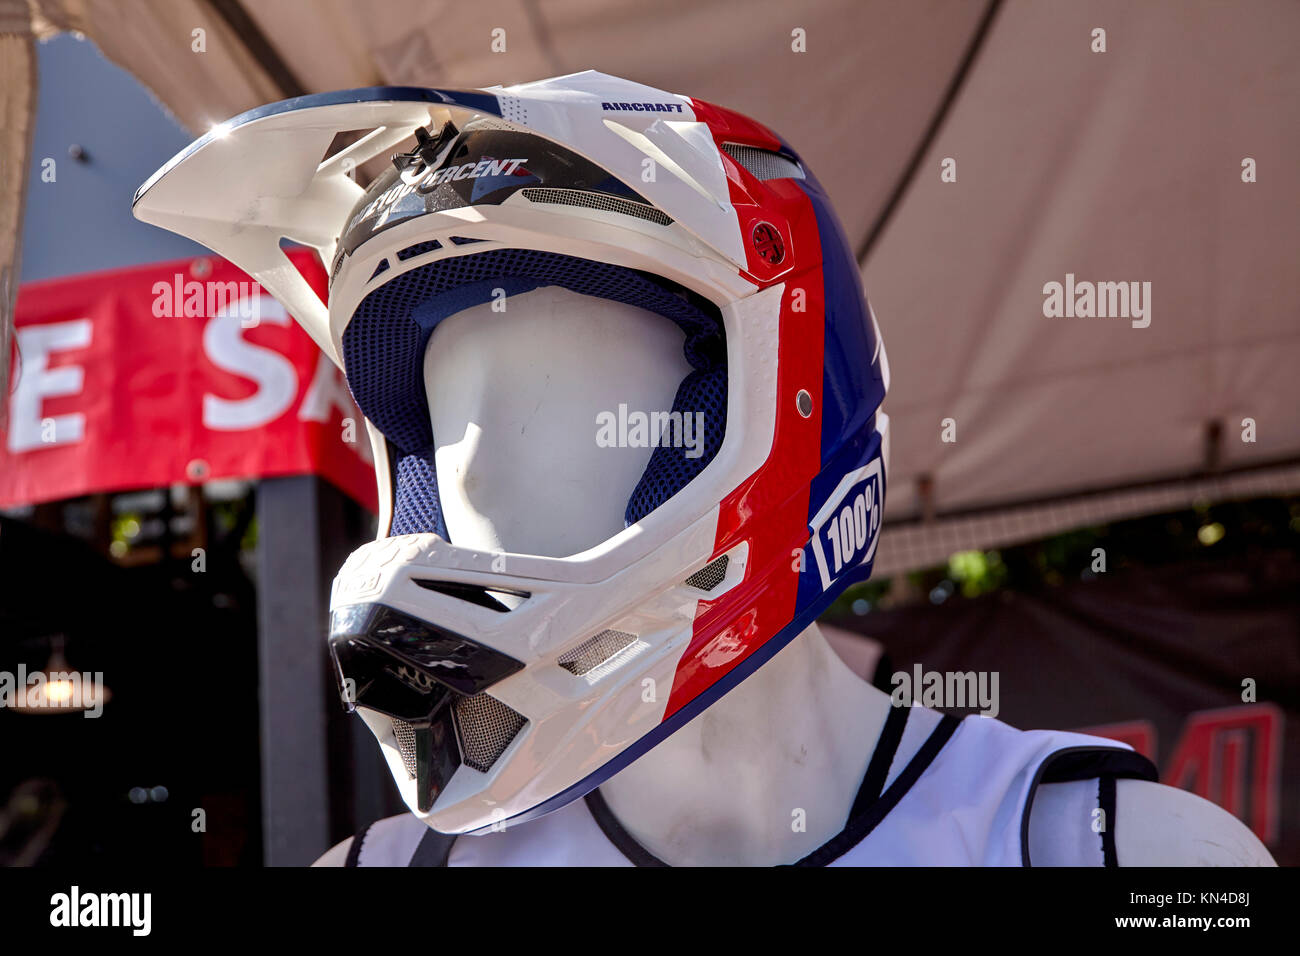 Casco de seguridad - Protección para la cabeza de cara completa para el jet  ski rider, moto o motocicleta Fotografía de stock - Alamy